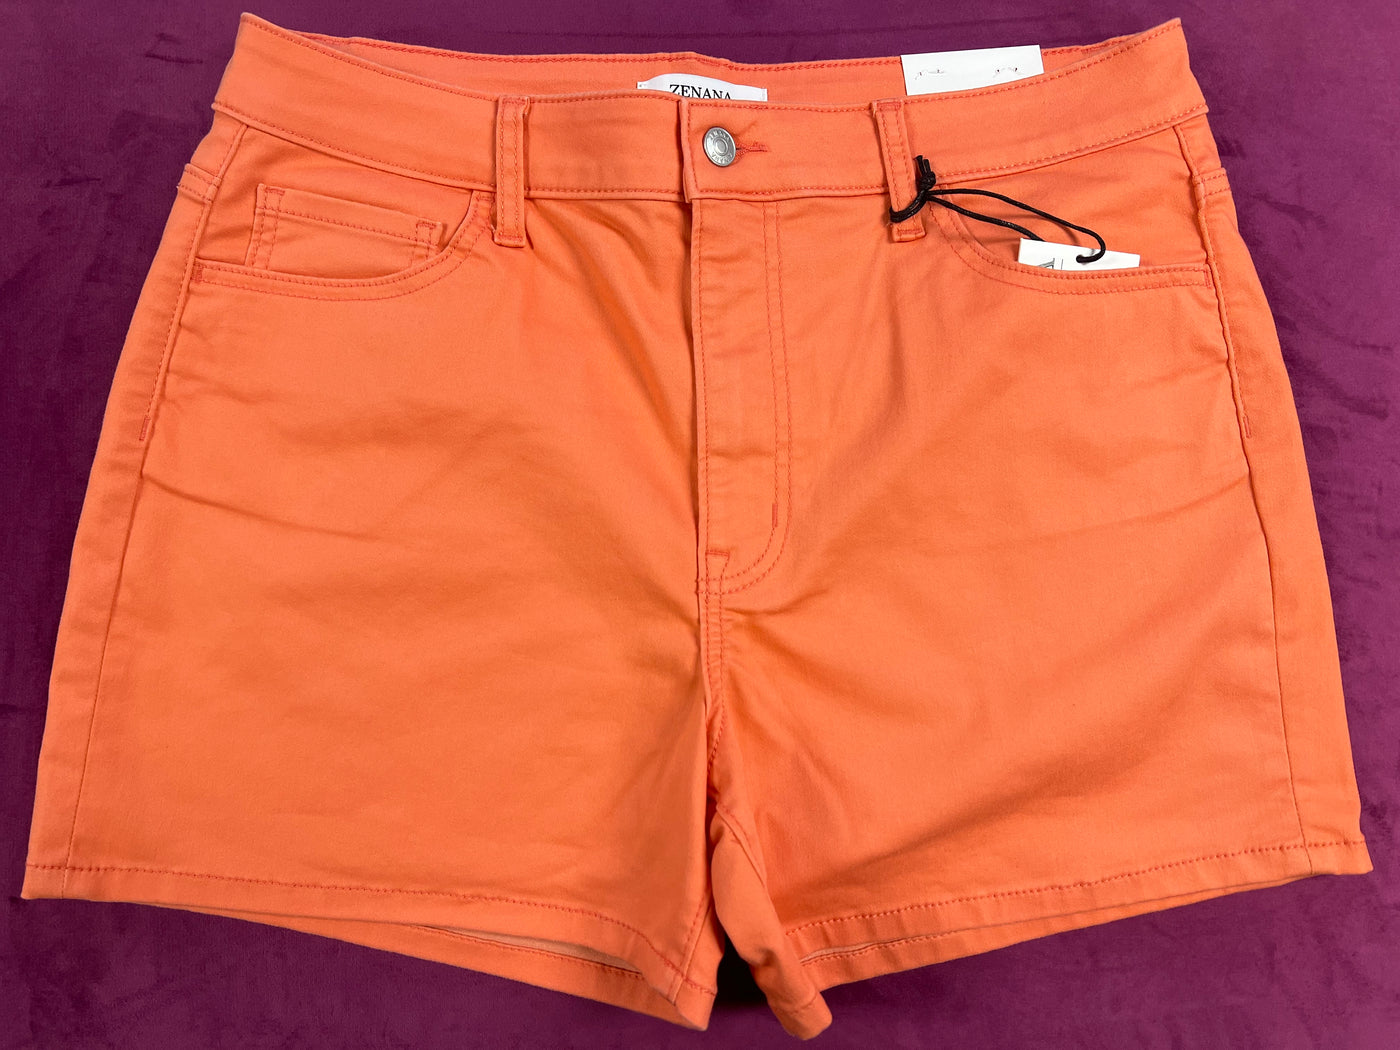 Vibrant Color perfect stretch fit shorts DOP-1613A Reqular